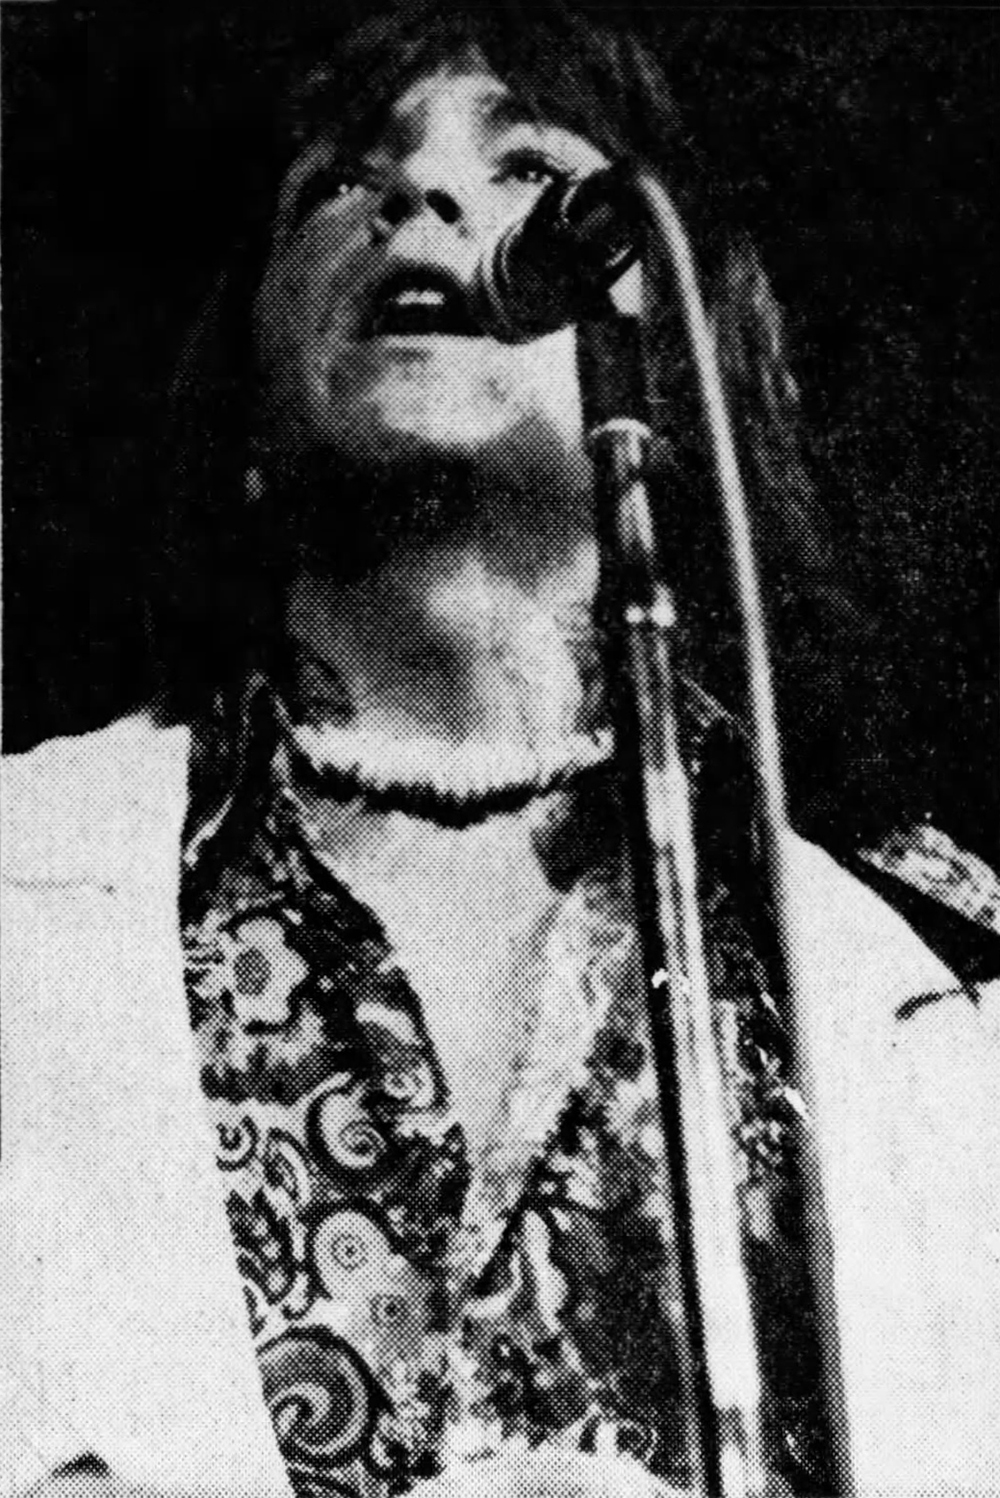 David Cassidy - May 28, 1972